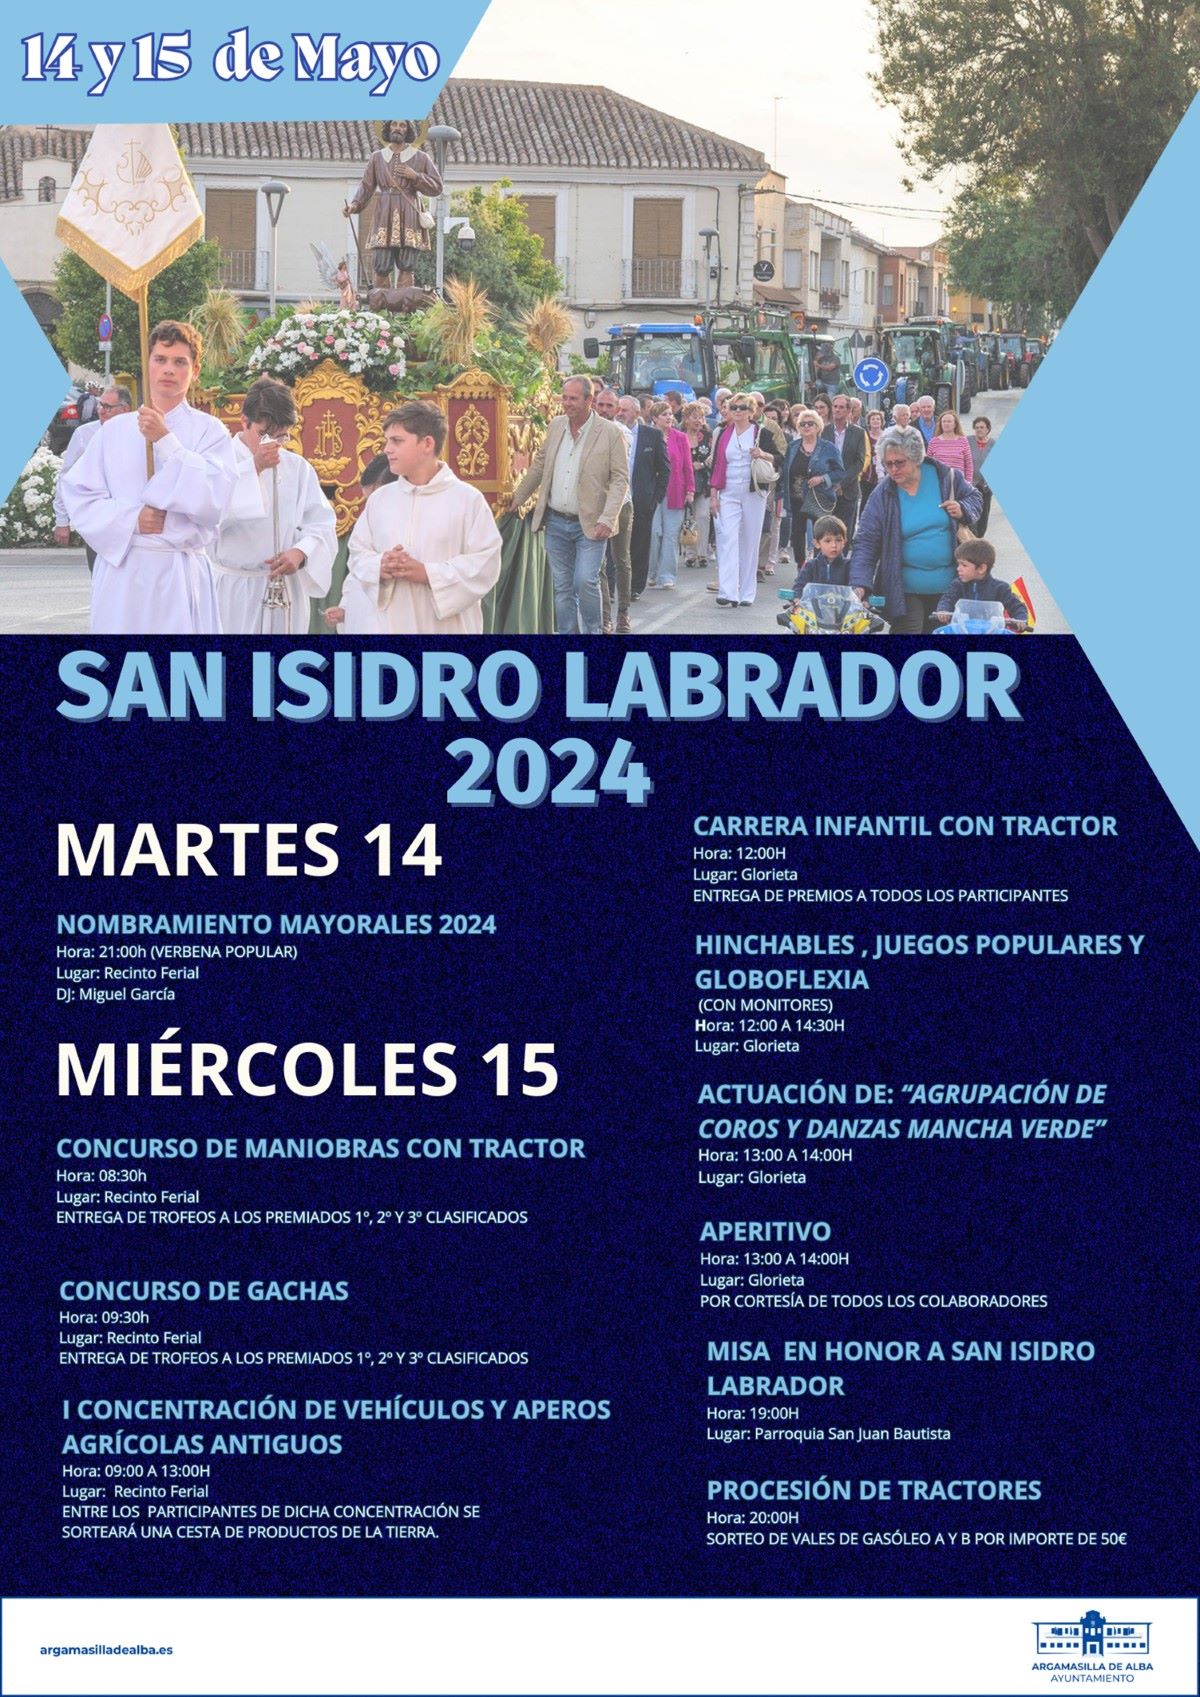 Argamasilla de Alba celebra las fiestas de San Isidro Labrador 2024 con una amplia programación